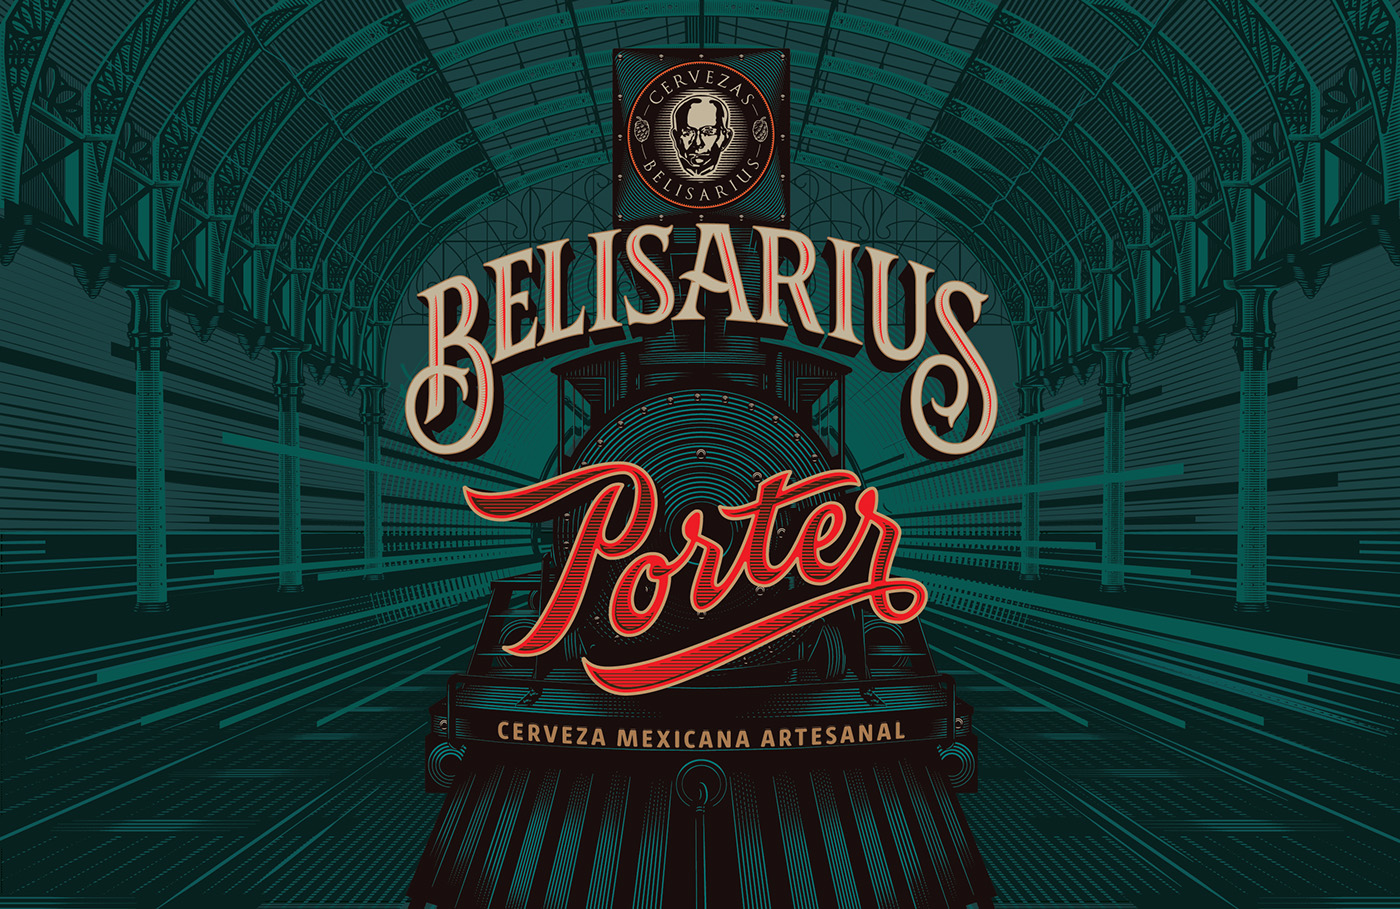 Belisarius Porter label